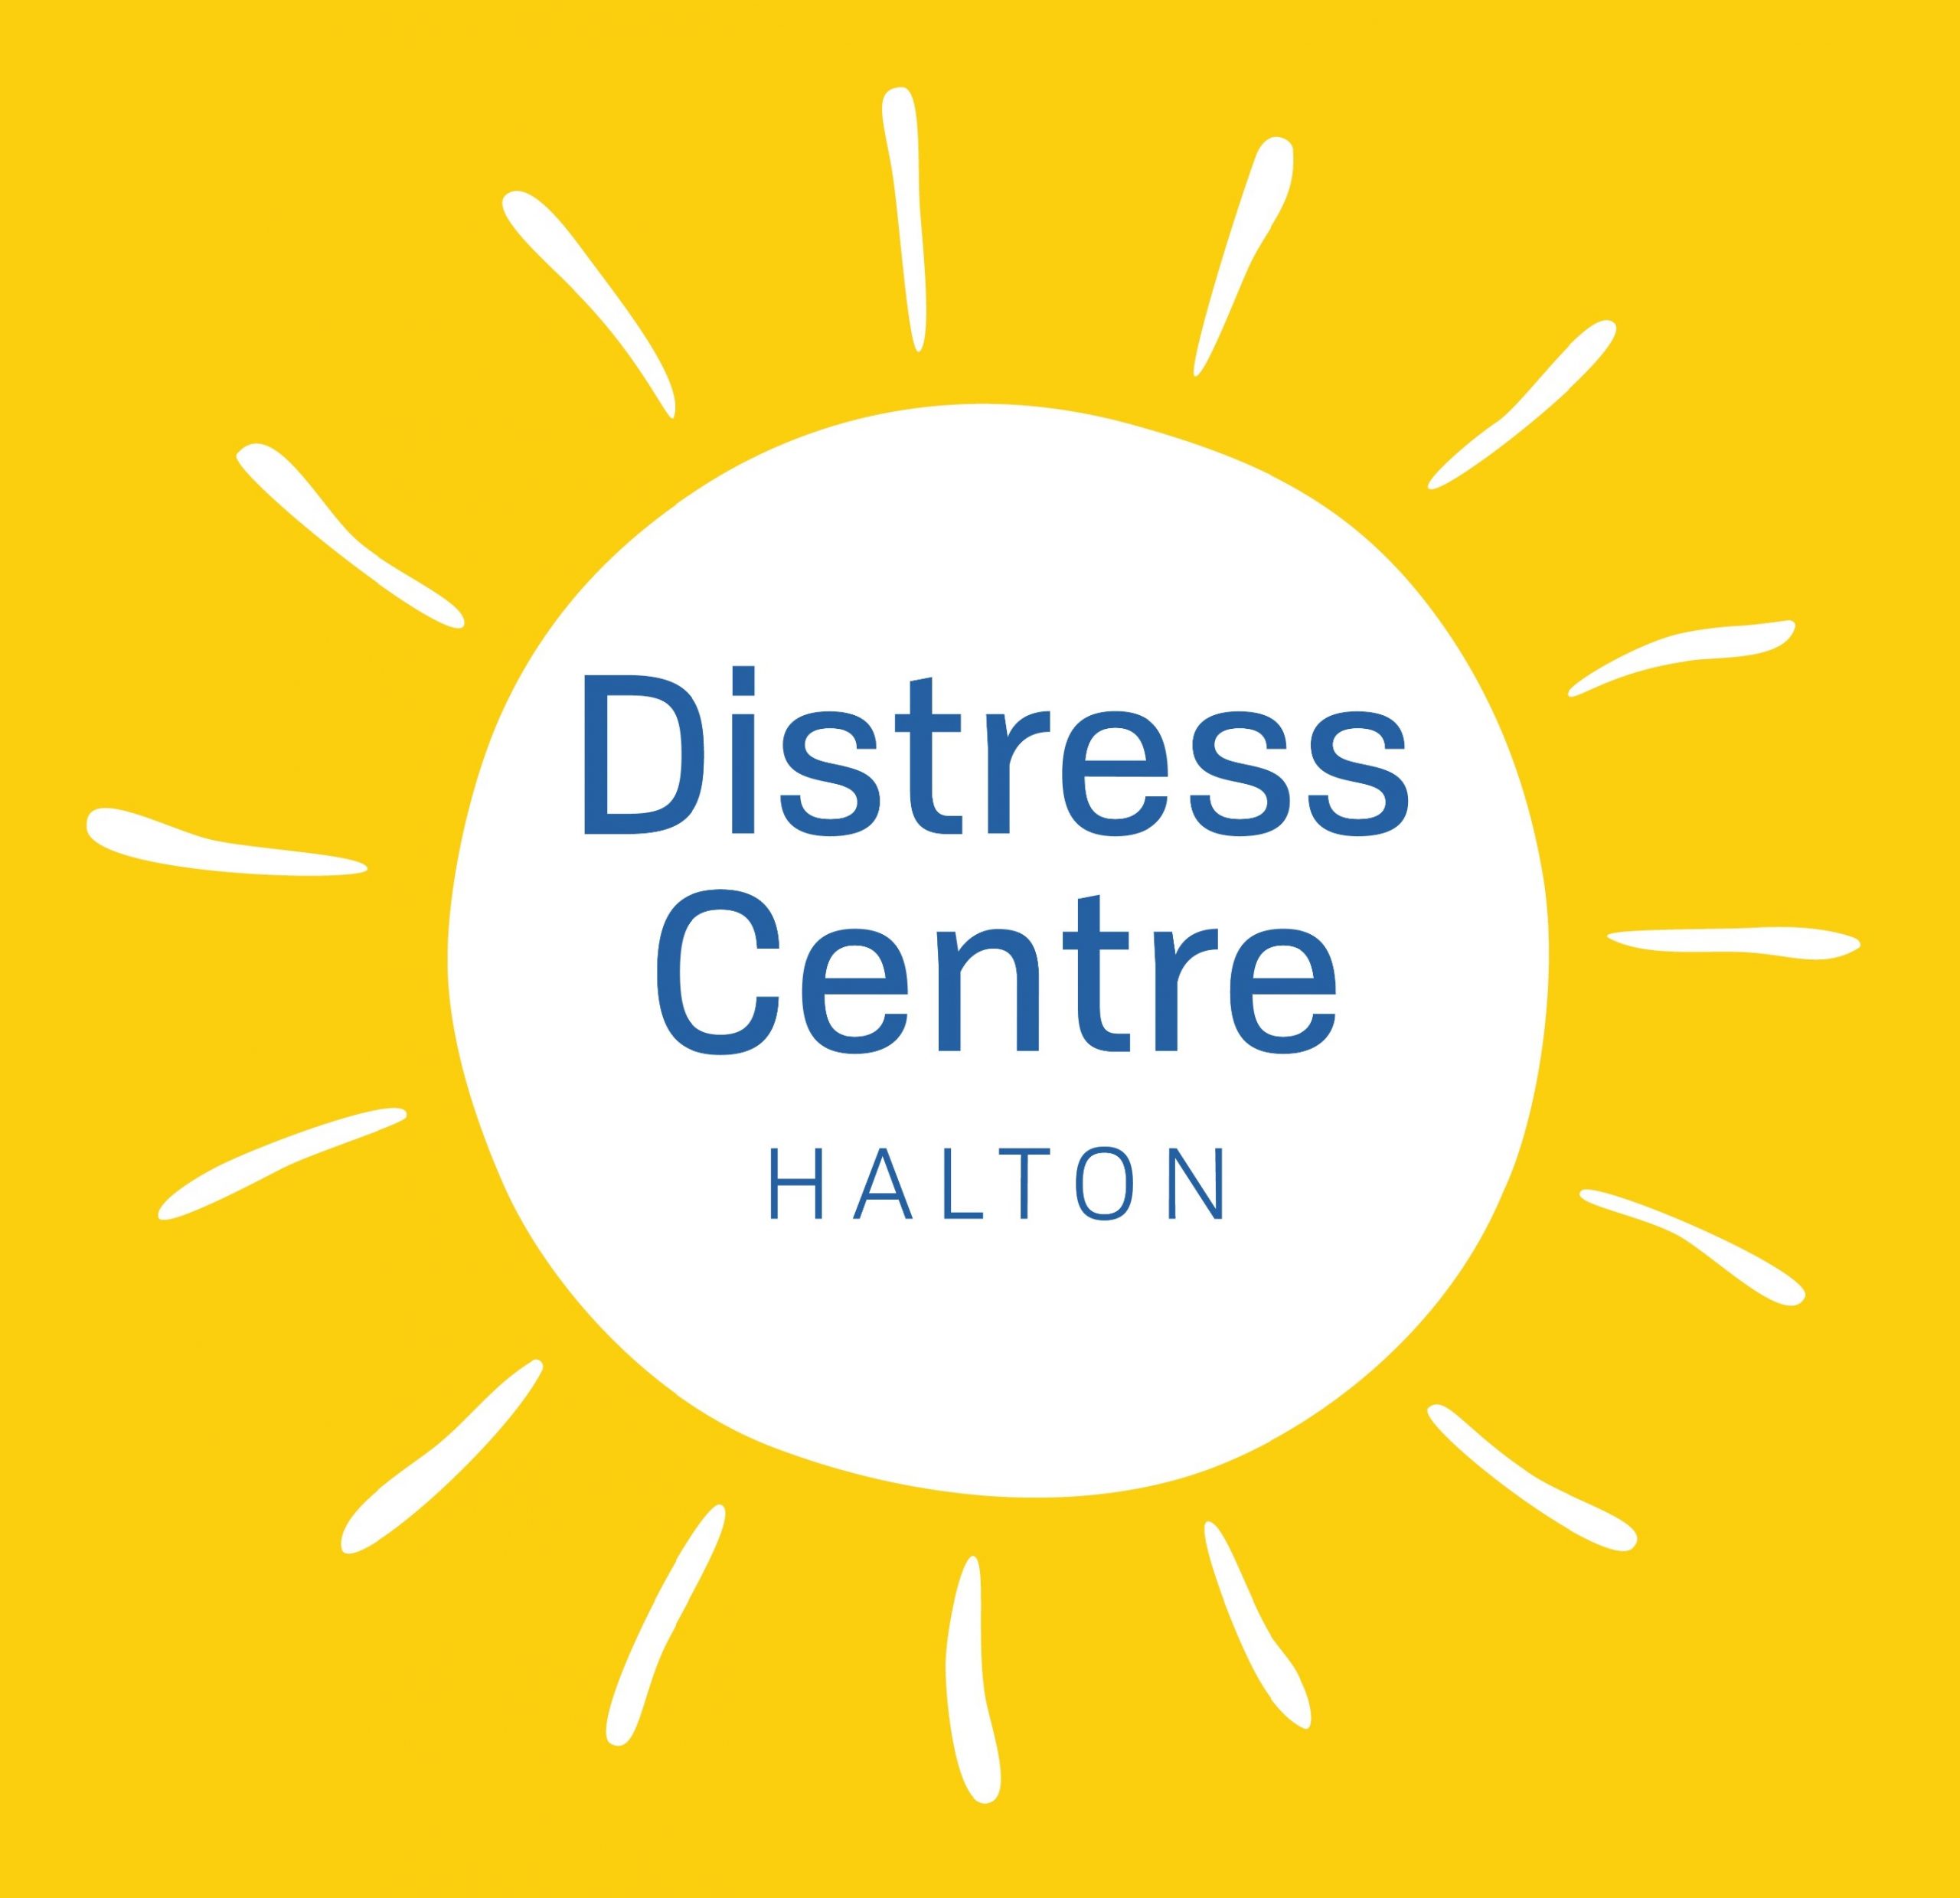 Distress Centre Halton